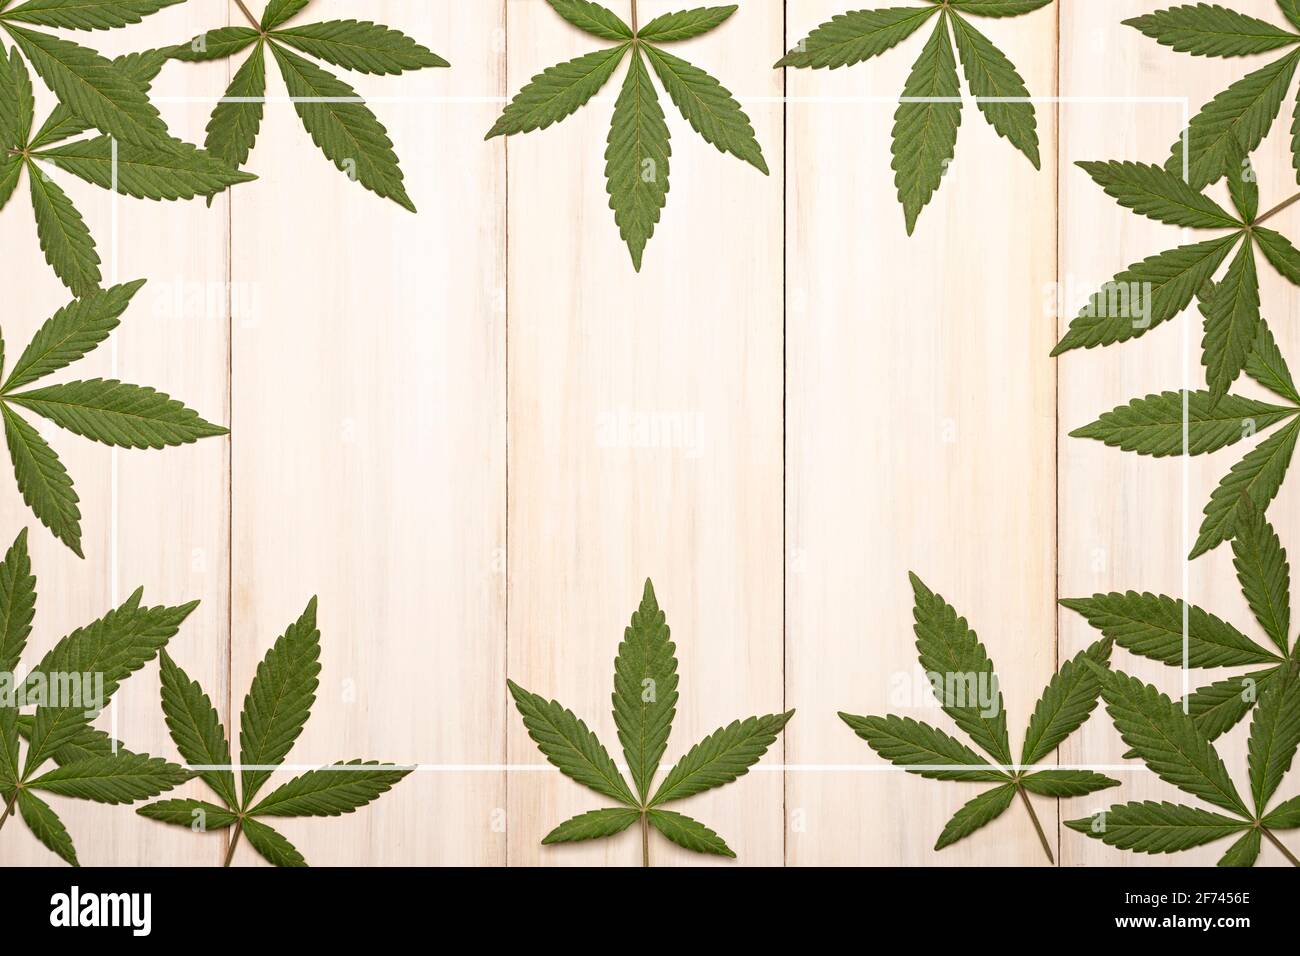 Grüne frische Cannabis Sativa Blätter (Marihuana) umrahmt eine rustikale weiße Holz Hintergrund mit Kopierbereich Stockfoto